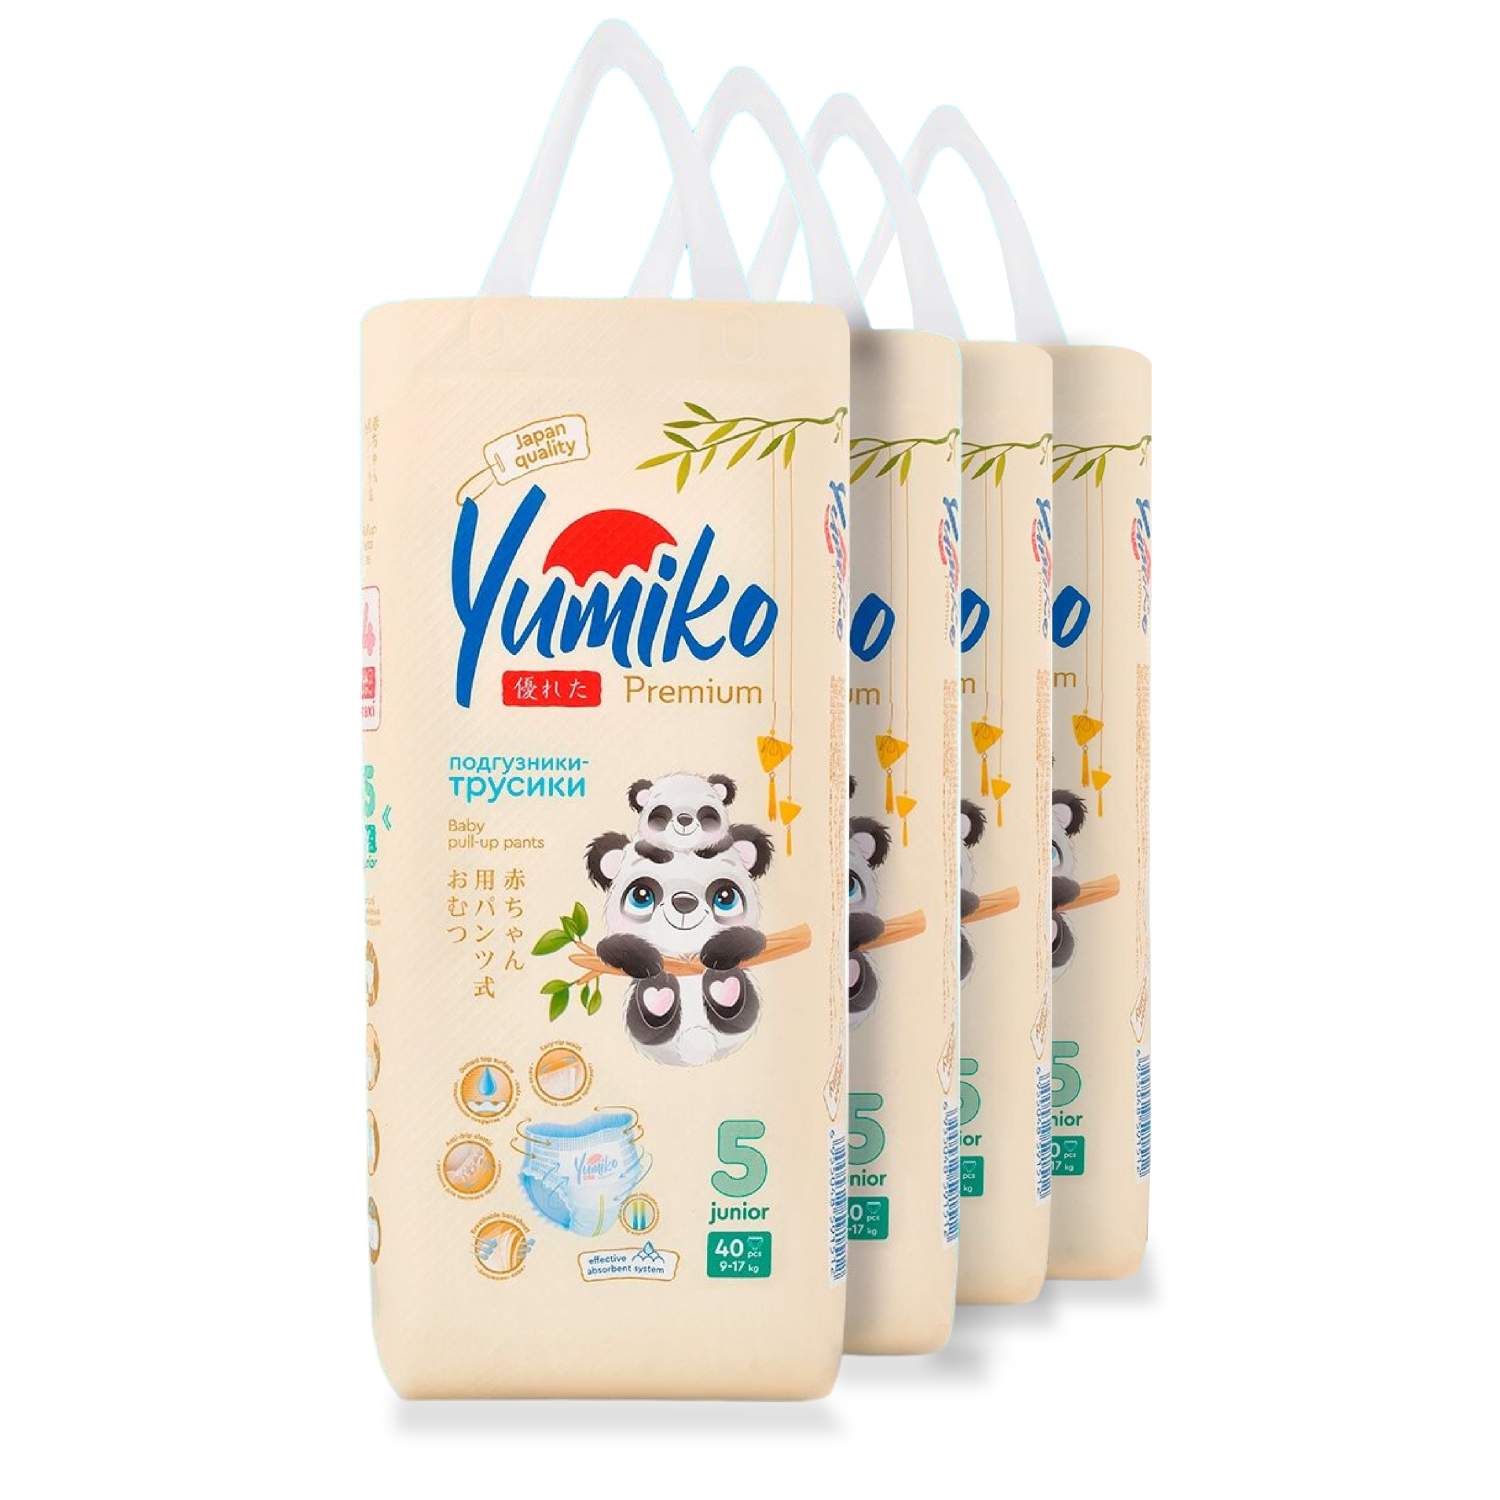 Купить трусики-подгузники Yumiko 5 XL (Junior), 9-17 кг 160 шт (4 упаковки  по 40 штук), цены на Мегамаркет | Артикул: 600008879746